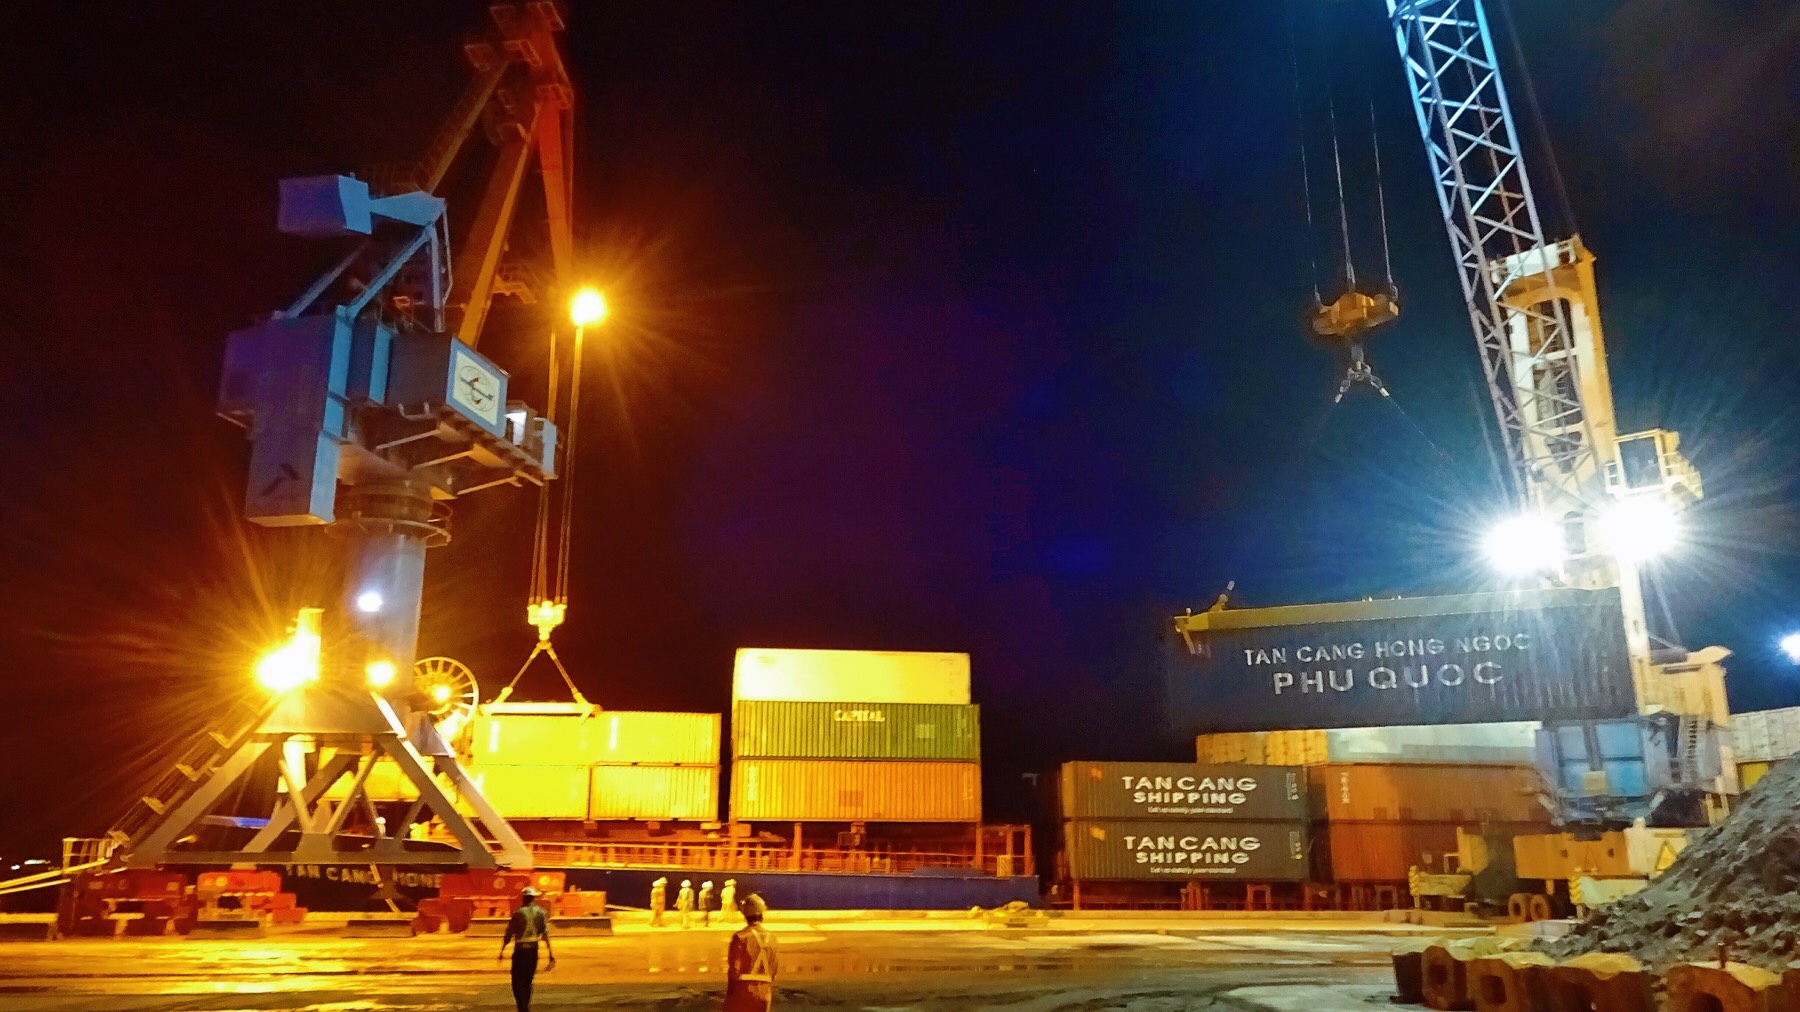 Chính sách hỗ trợ các hãng tàu biển mở tuyến vận chuyển container và đối tượng có hàng hóa vận chuyển bằng container qua cảng Vũng Áng, tỉnh Hà Tĩnh